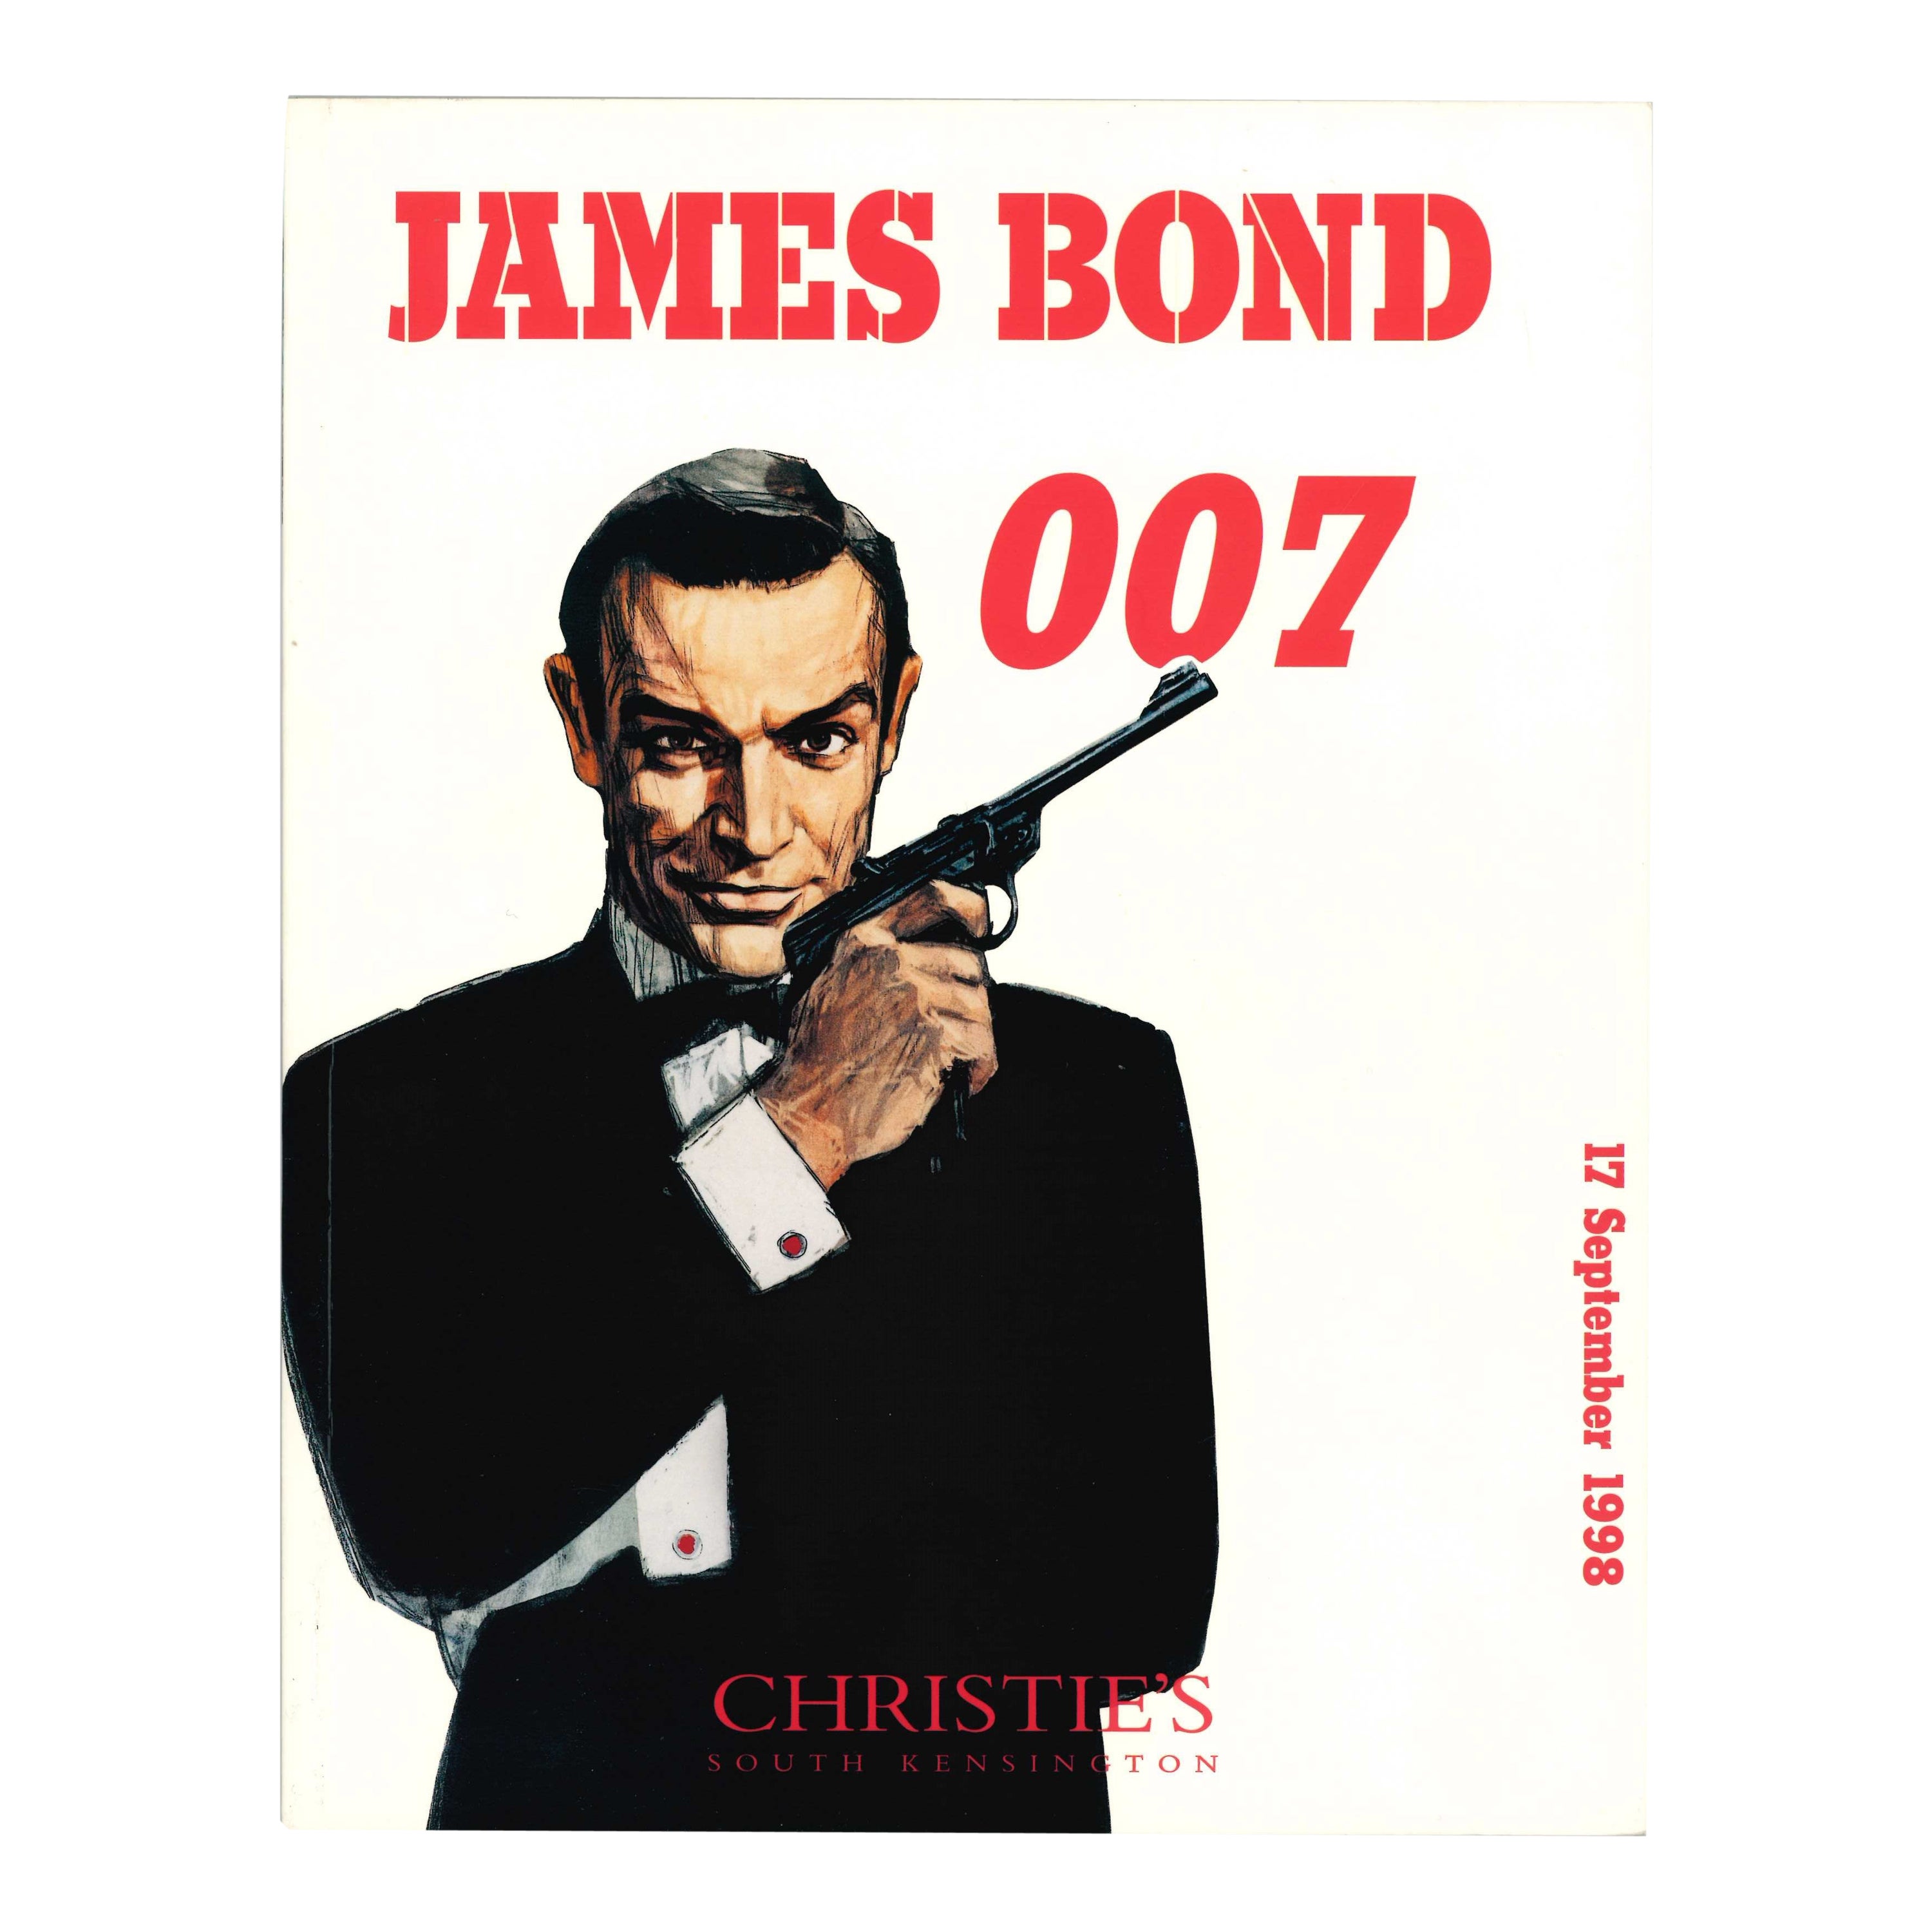 James Bond 007, Catalogue de vente Christies de septembre 1998 (livre)